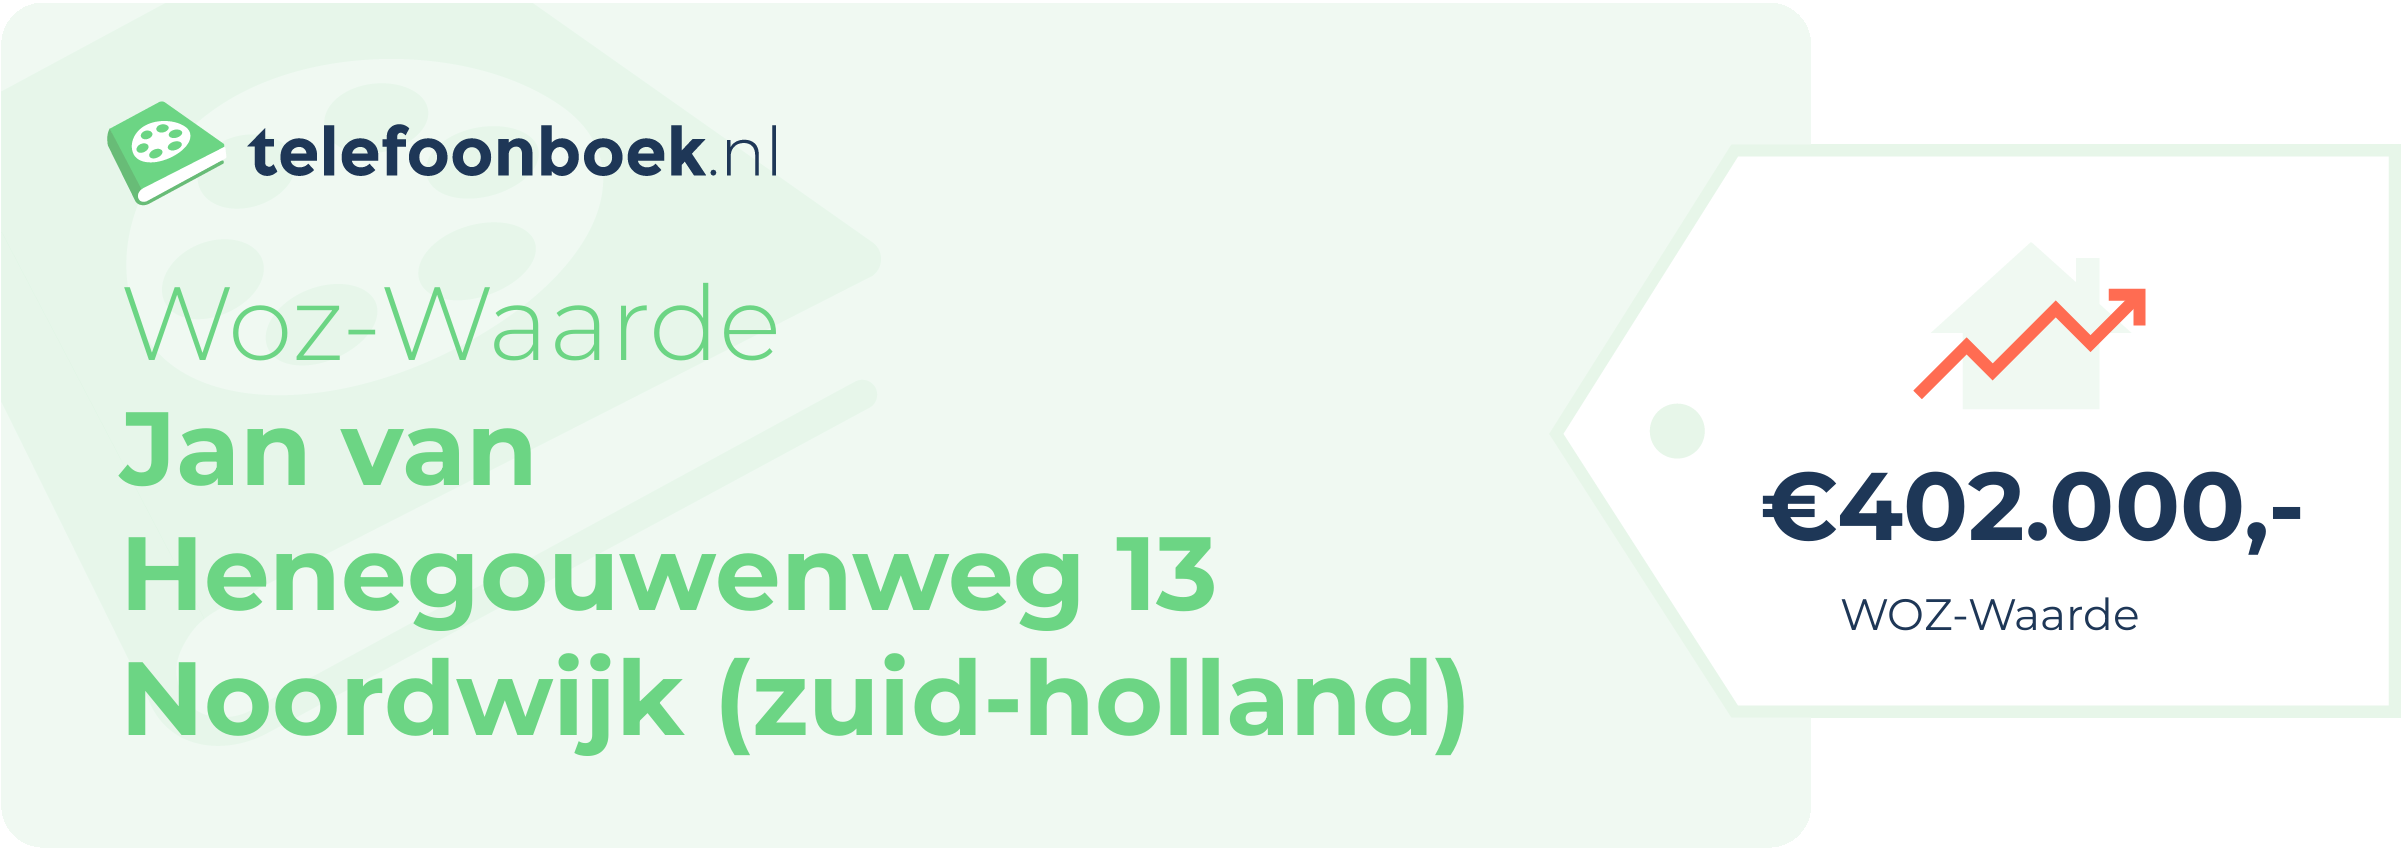 WOZ-waarde Jan Van Henegouwenweg 13 Noordwijk (Zuid-Holland)